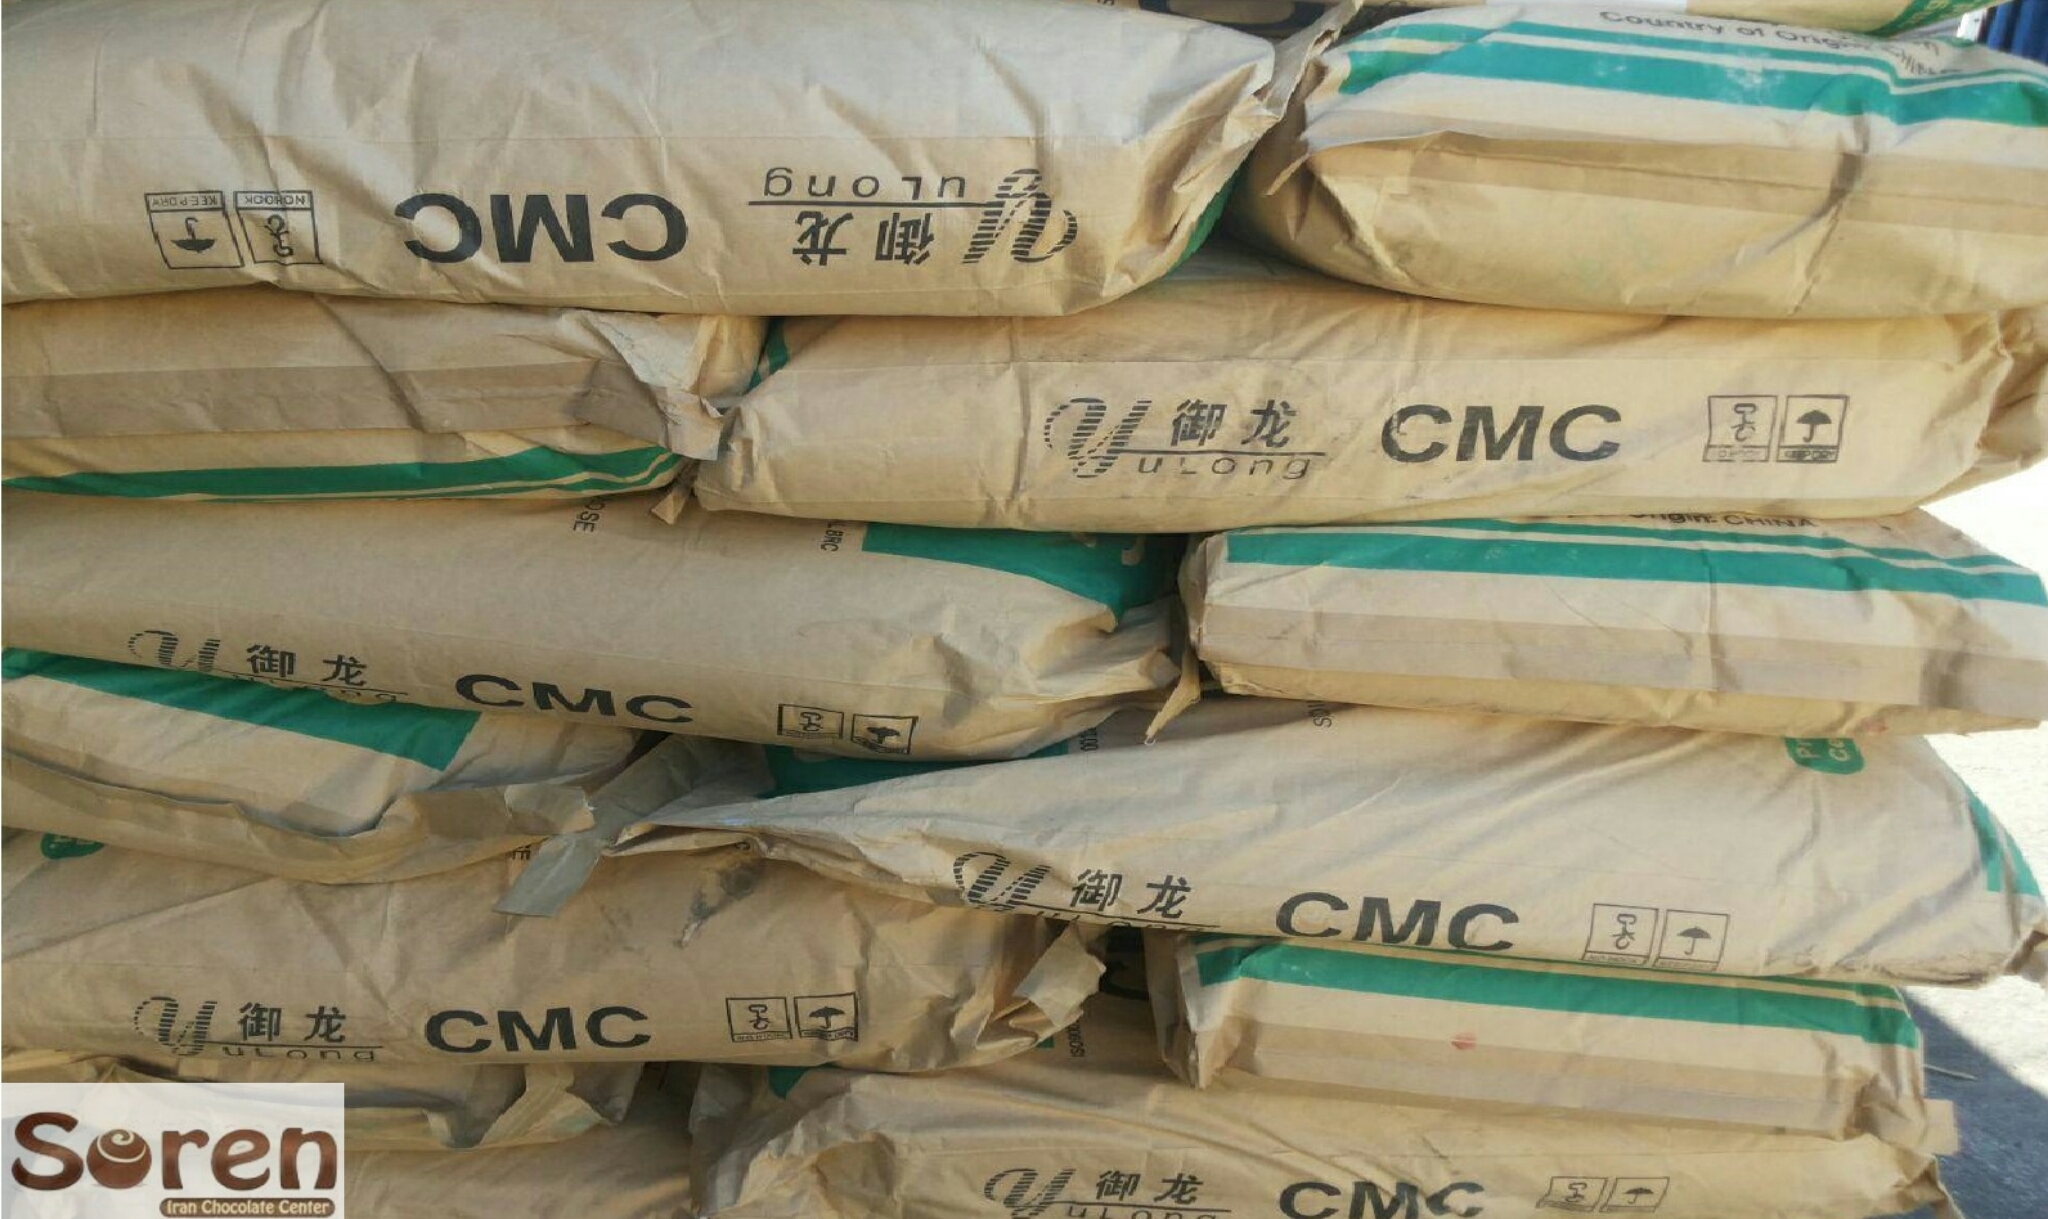 واردات پودر ثعلب (CMC) در تناژ بالا